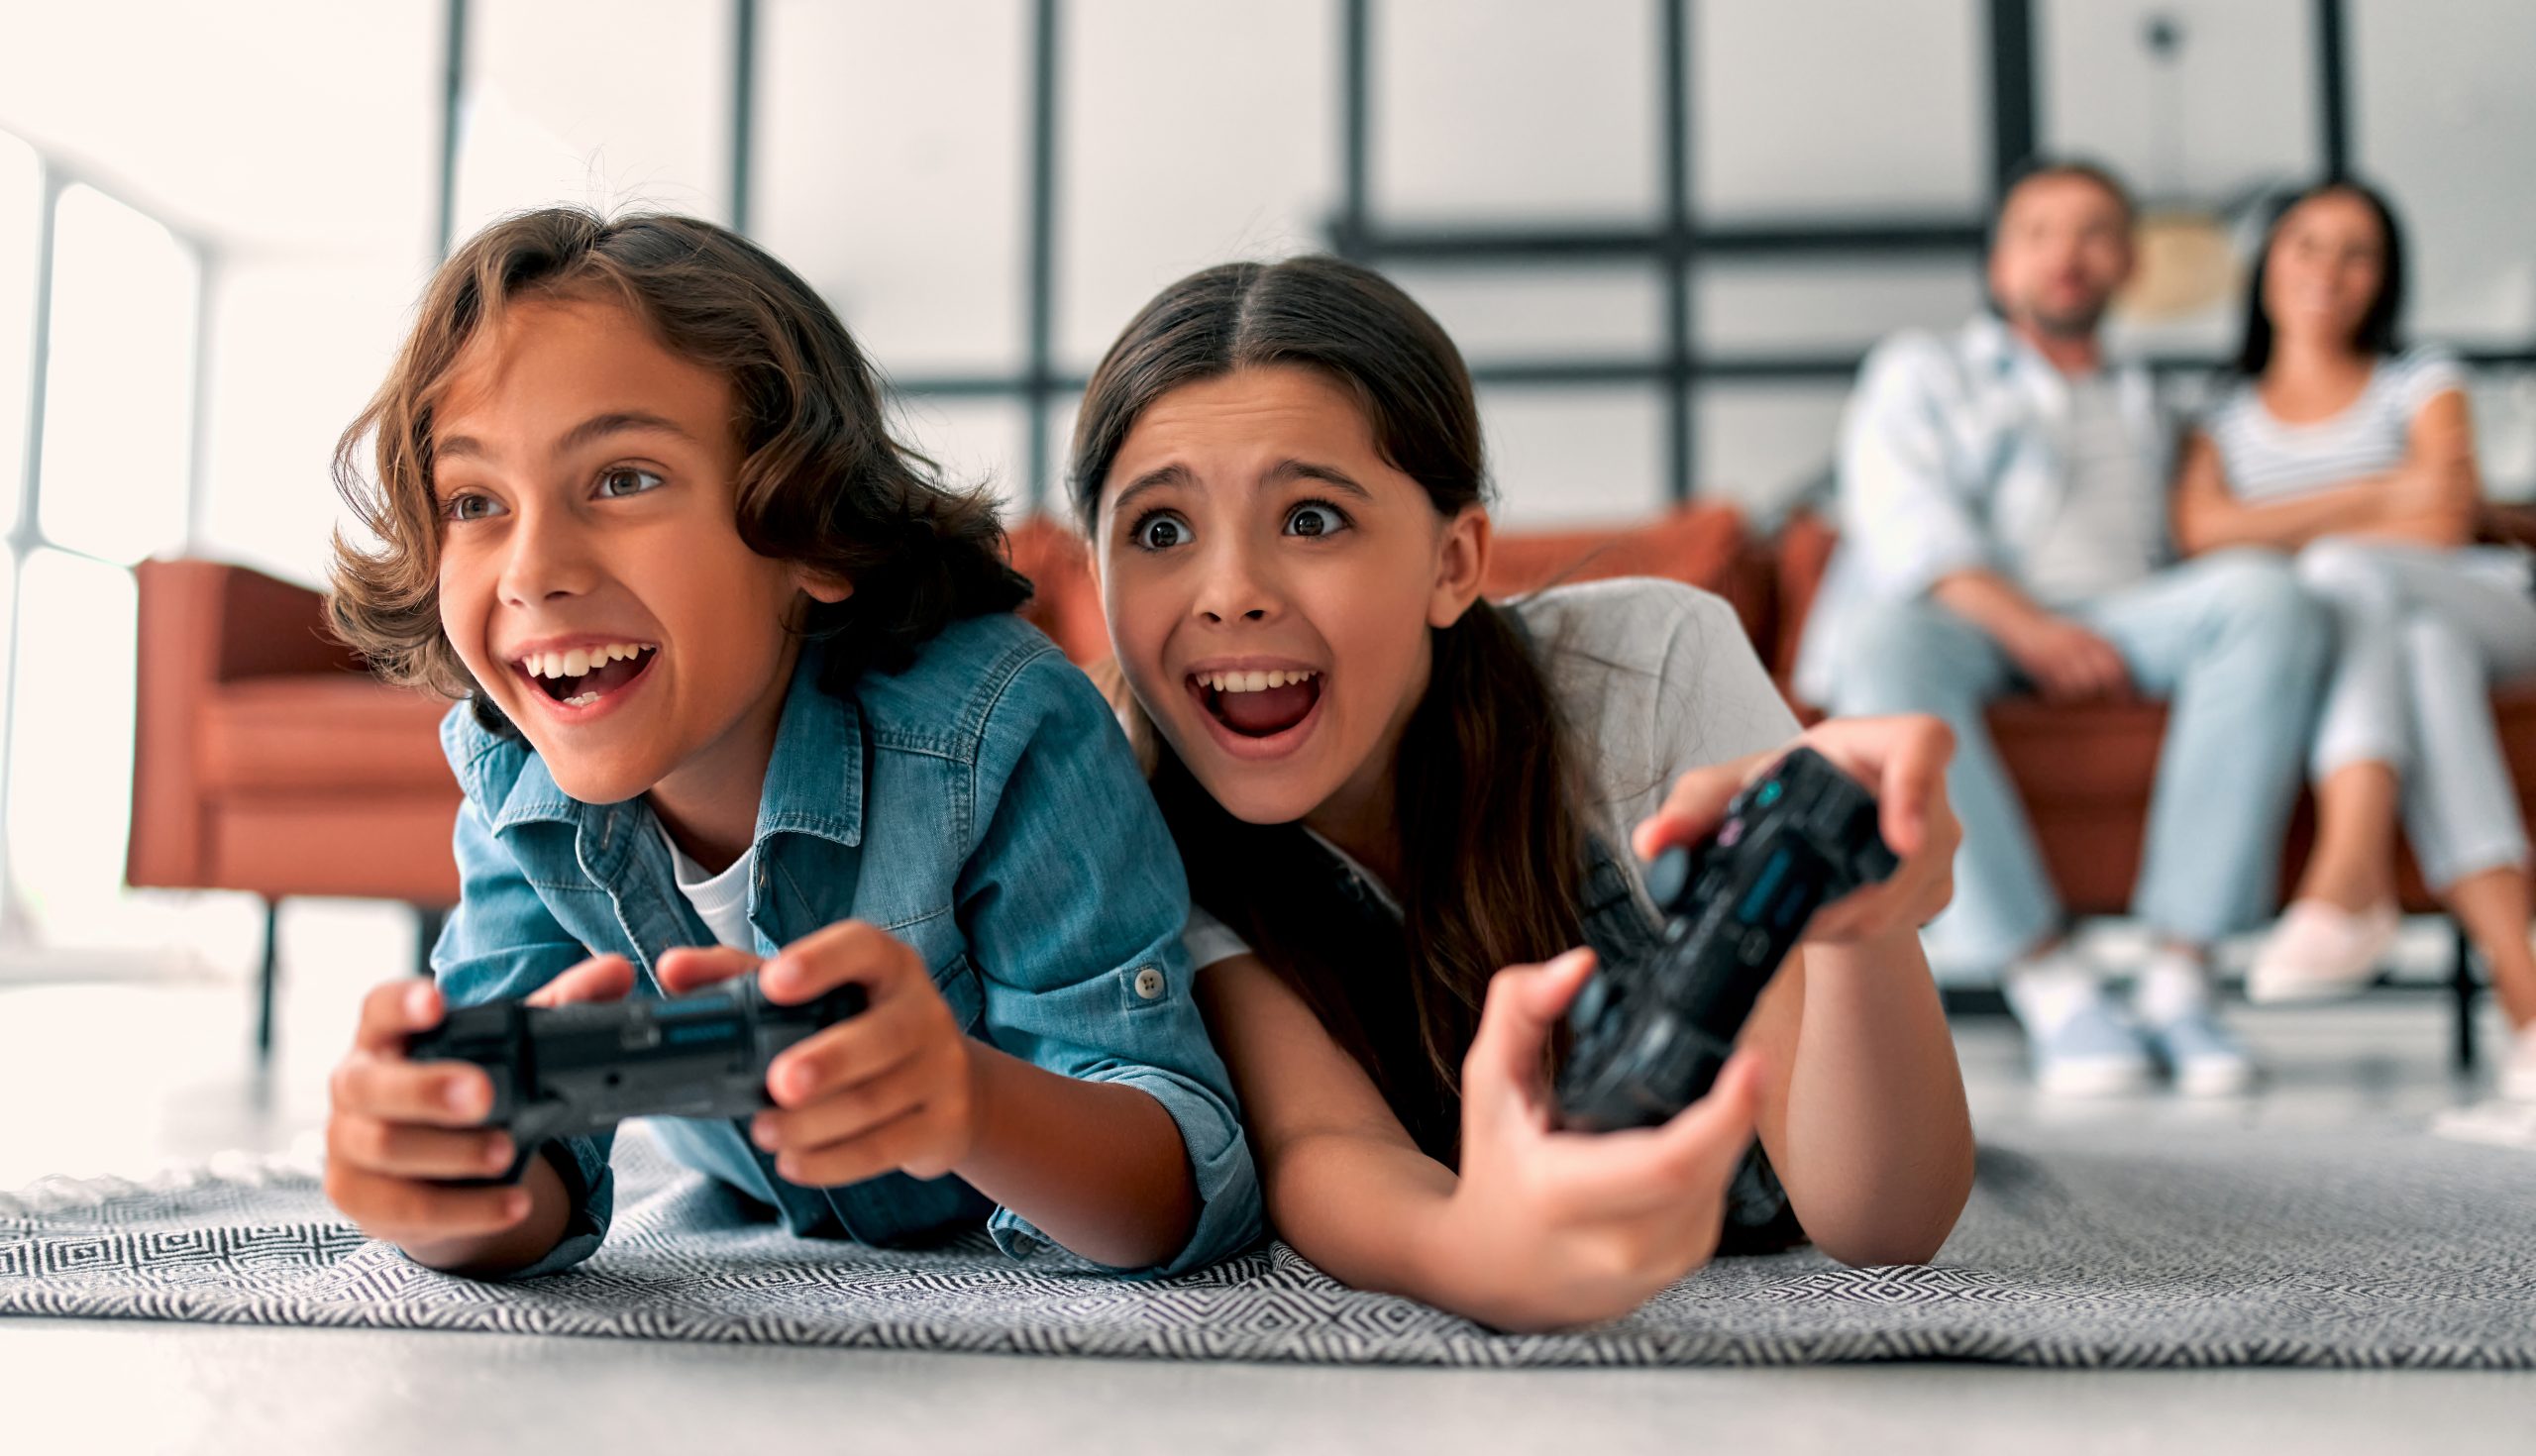 Imagem mostra duas crianças jogando videogame com os pais observando-as ao fundo